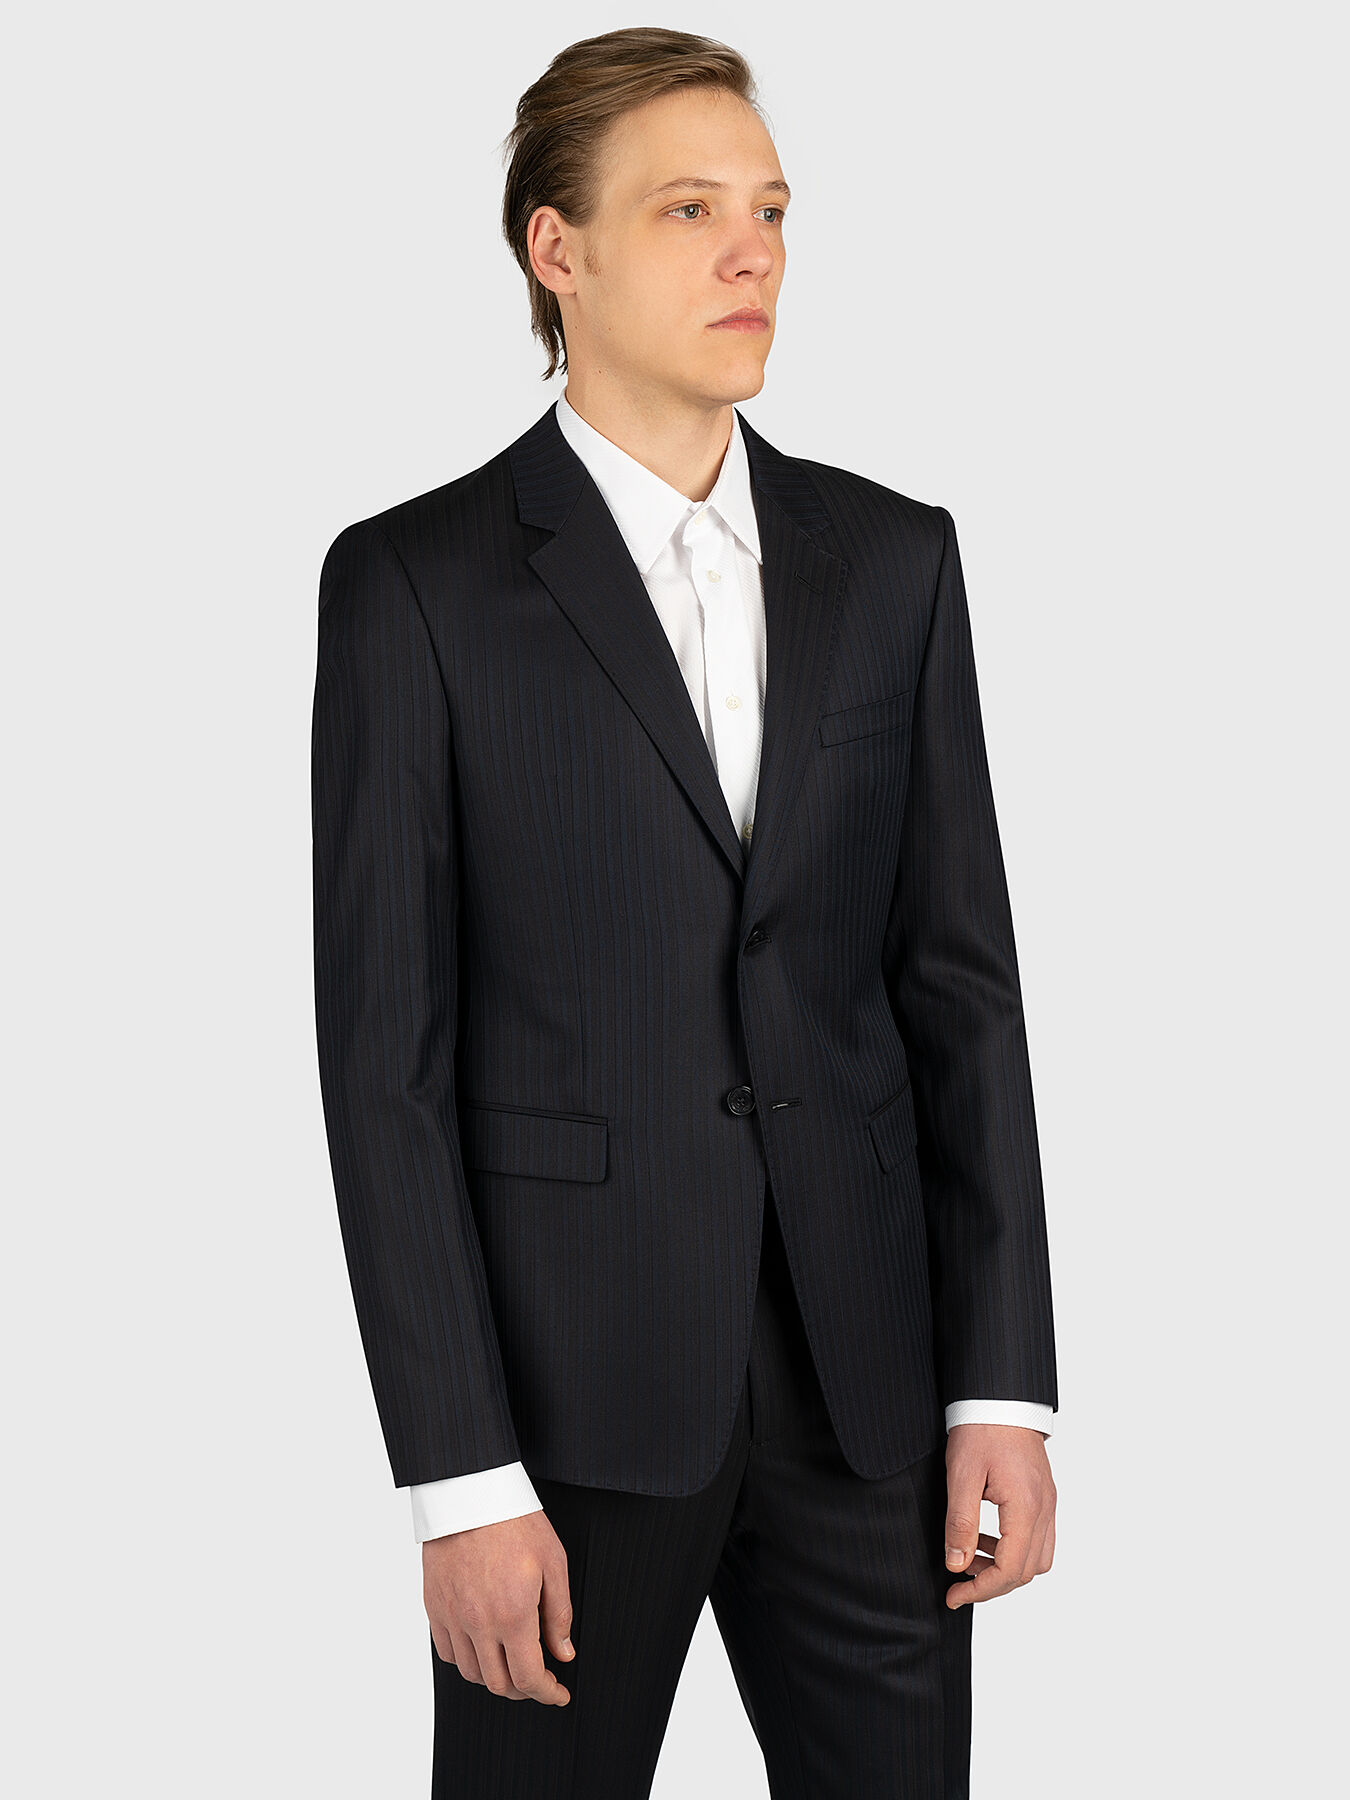 NoName Suit trousers MEN FASHION Suits & Sets Elegant Navy Blue 38                  EU discount 97% 